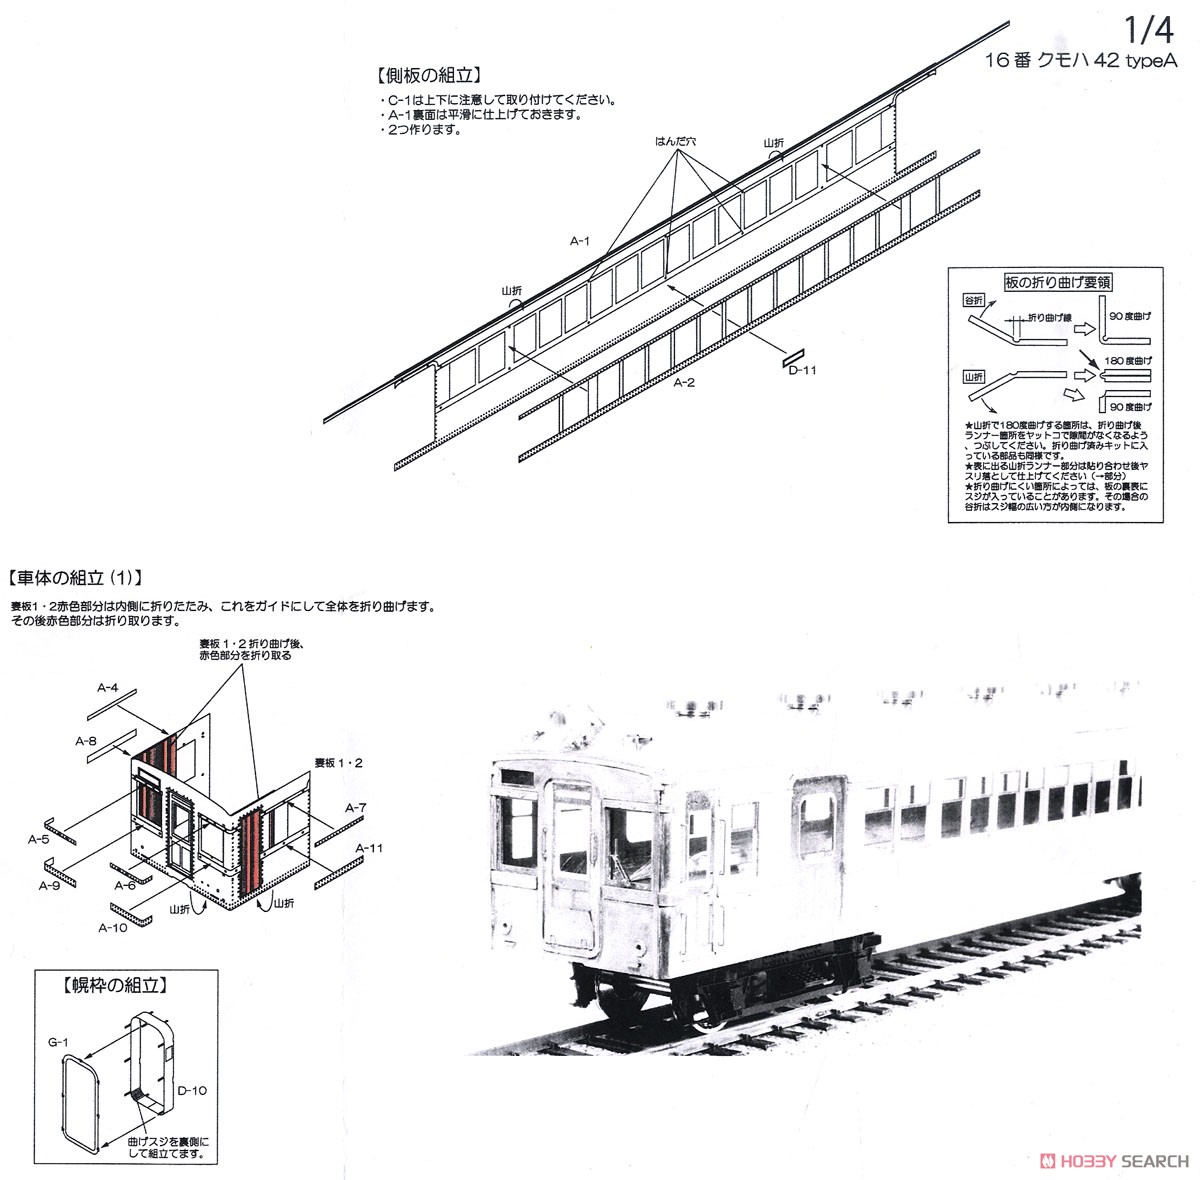 16番(HO) 国鉄 クモハ42 タイプA 車体組立キット (組み立てキット) (鉄道模型) 設計図1